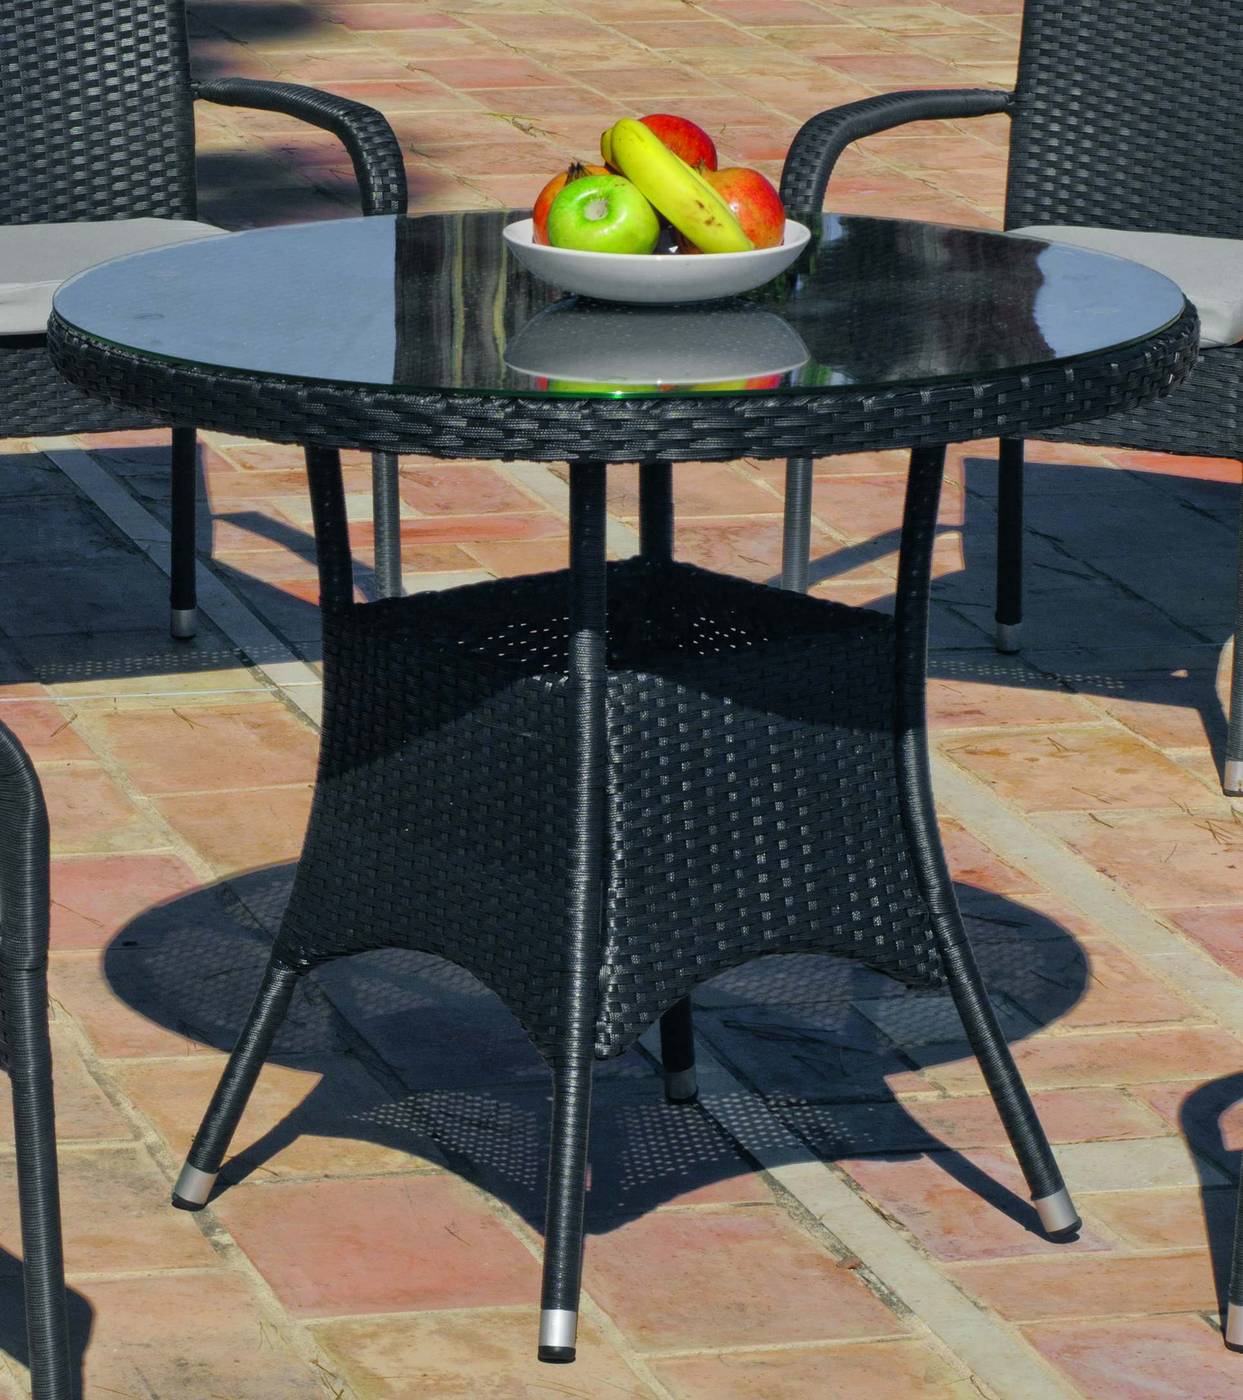 Conjunto Ratán Sintético Ampurias 90-4 - Conjunto de ratán sintético color antracita: 1 mesa comedor + 4 sillones con cojines tapizados en dralón